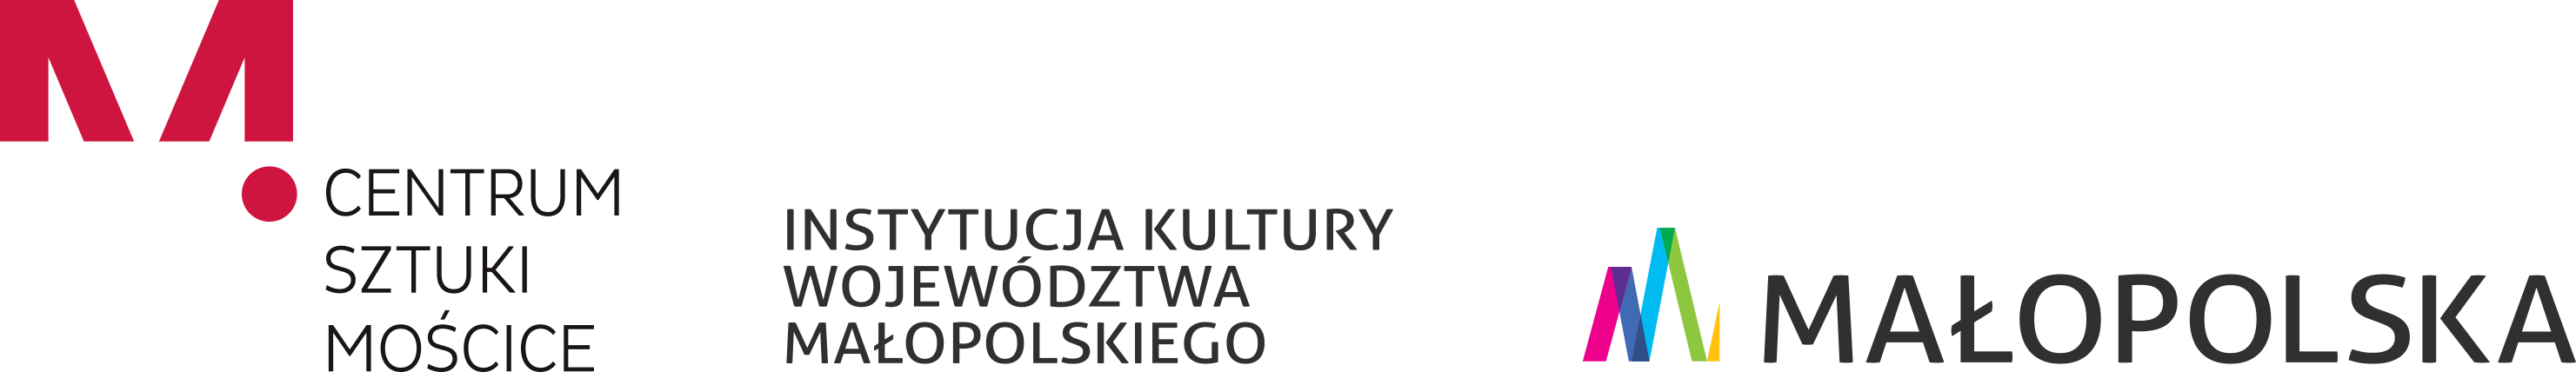 Oficialny sklep internetowy Centrum Sztuki Mościce w Tarnowie